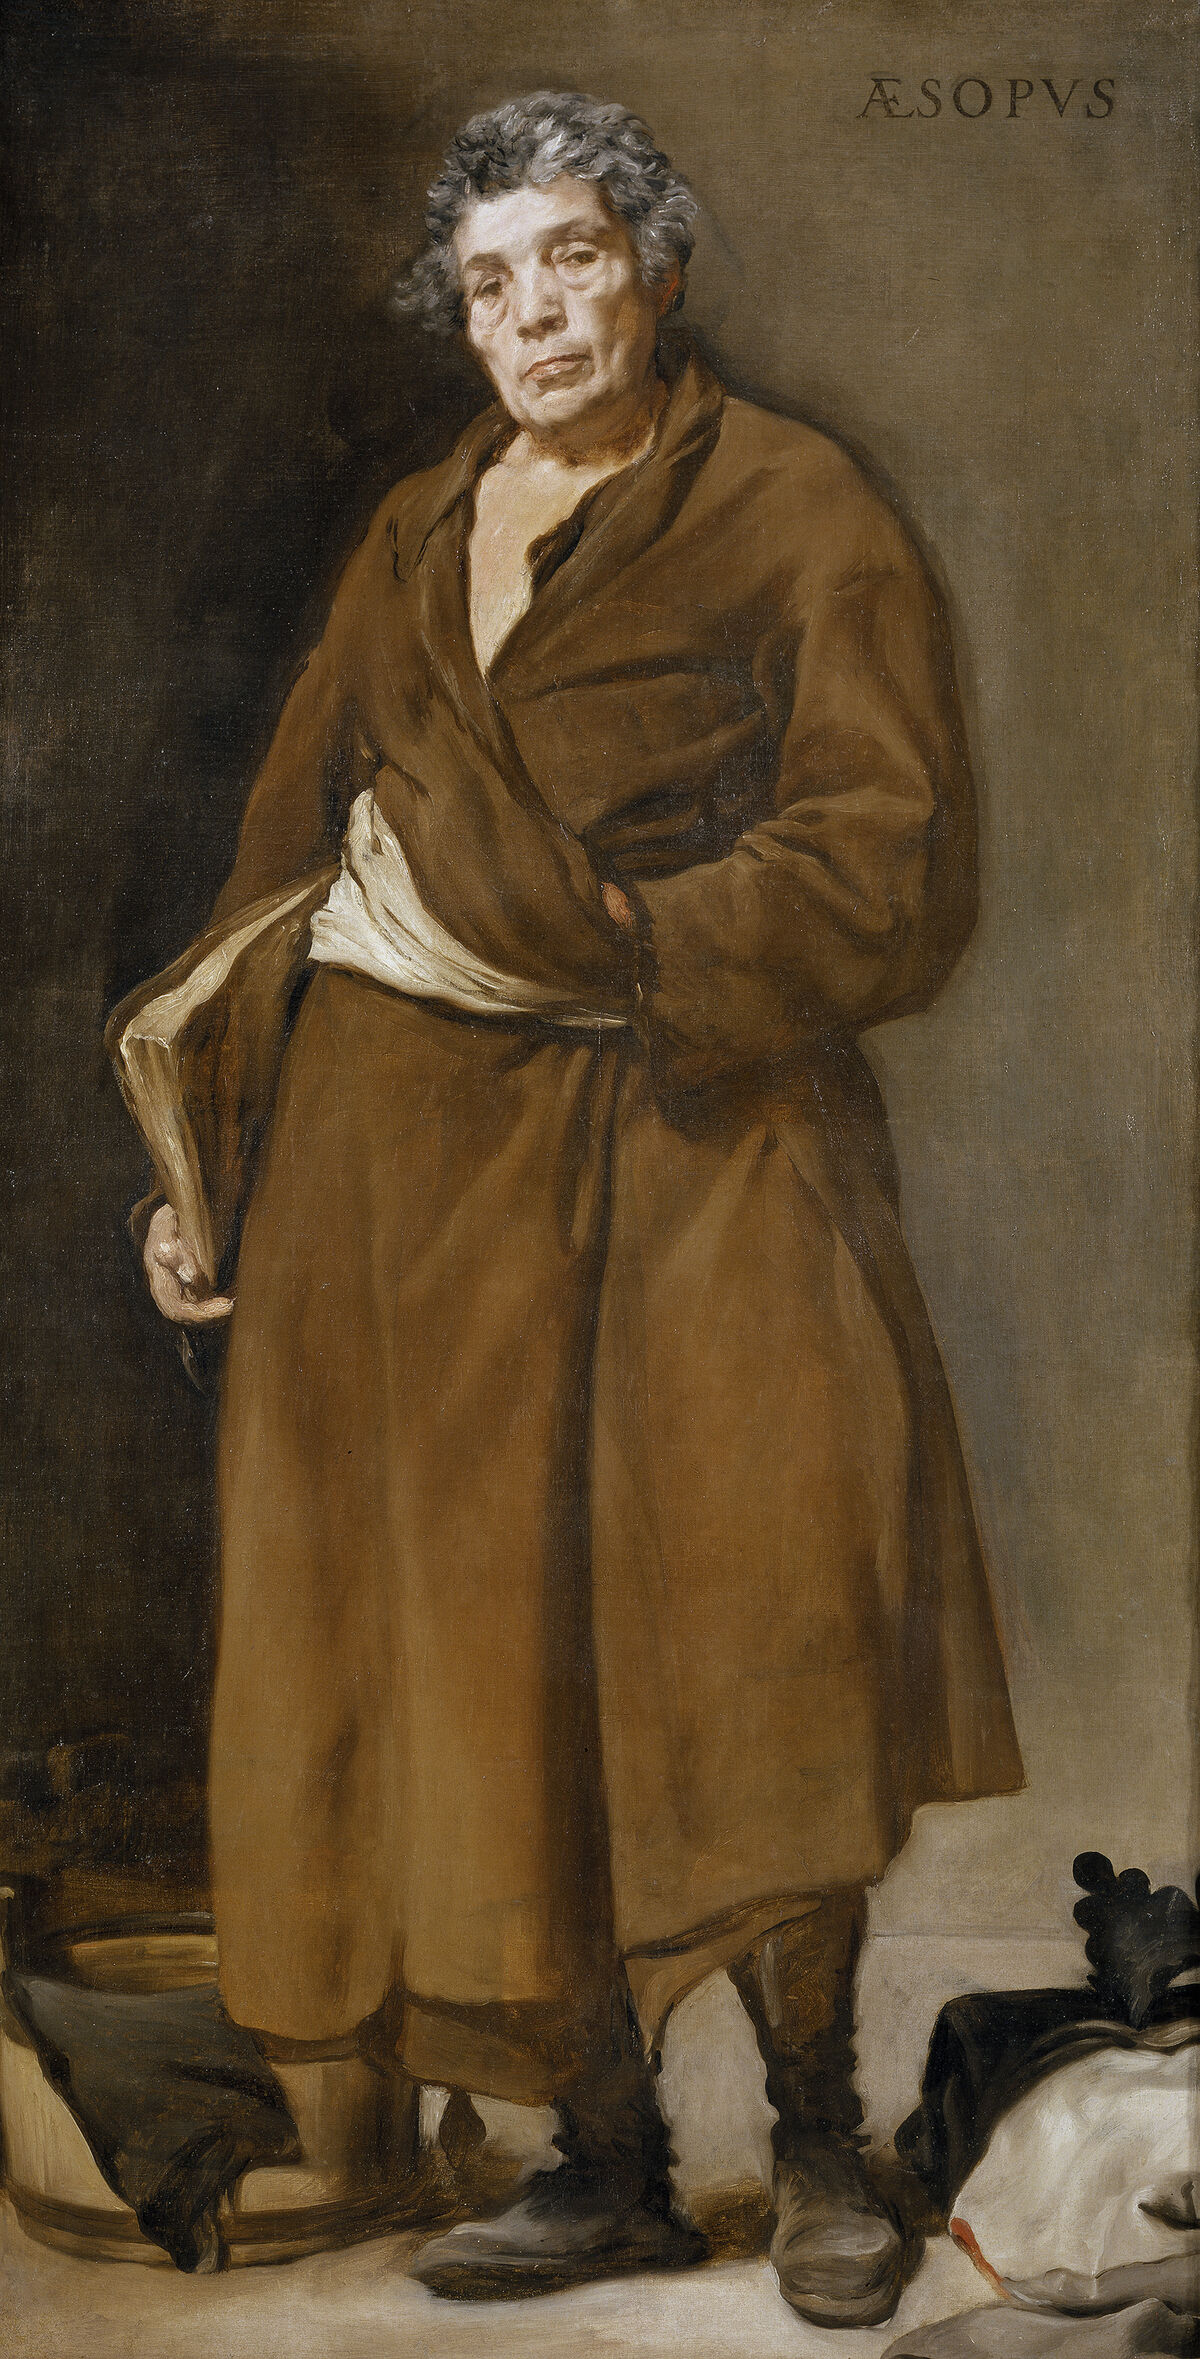 GFD 1/237: Portrait des Fabeldichters Äsop (Gemälde von Diego Velázquez, um 1638)